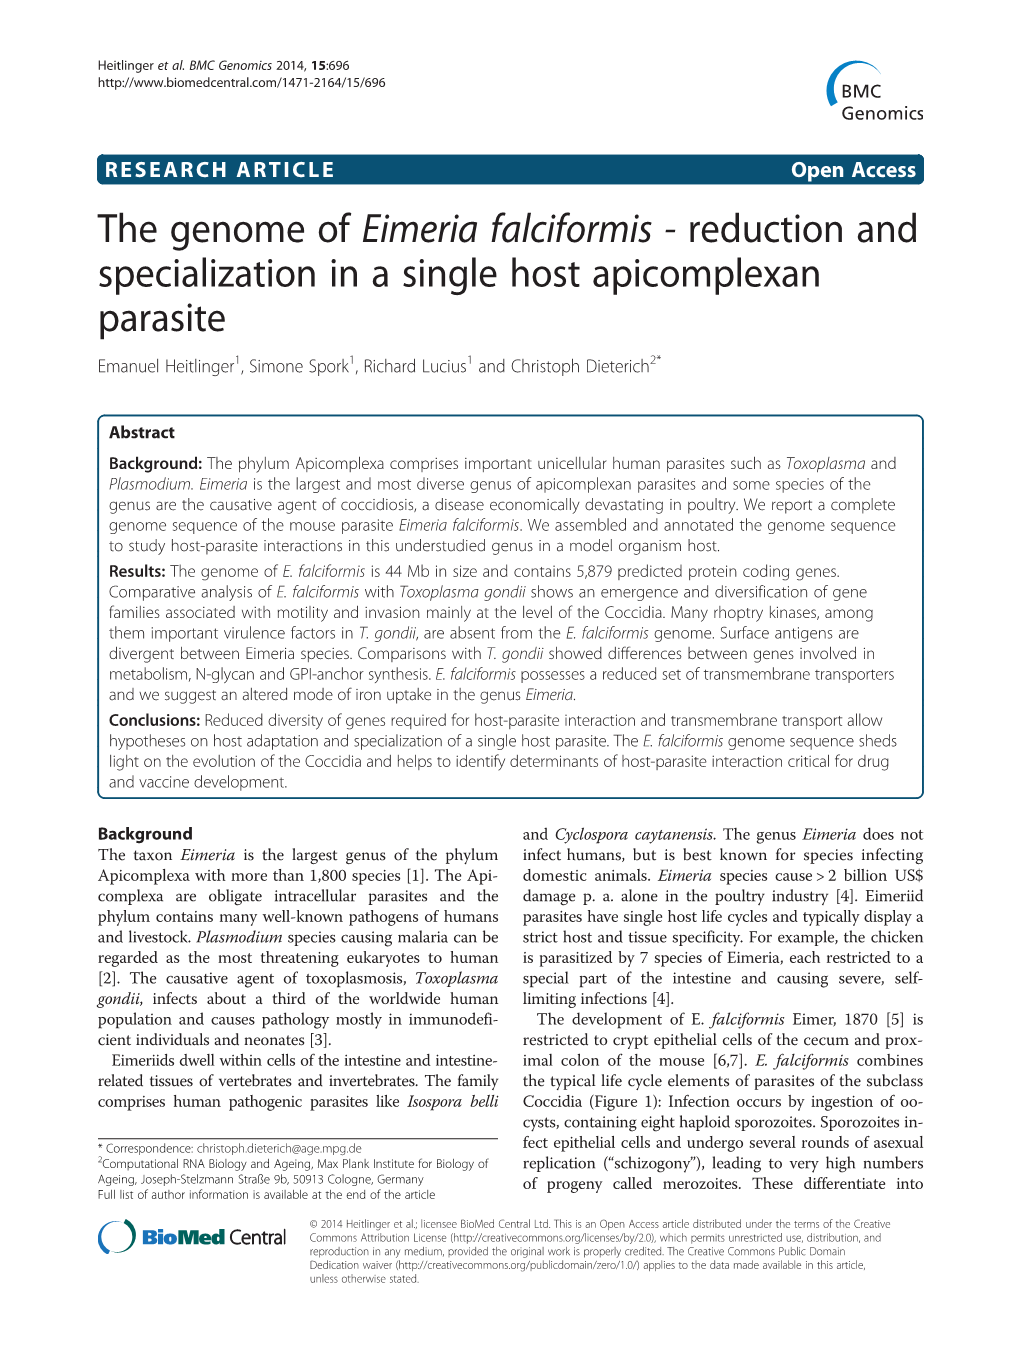 The Genome of Eimeria Falciformis